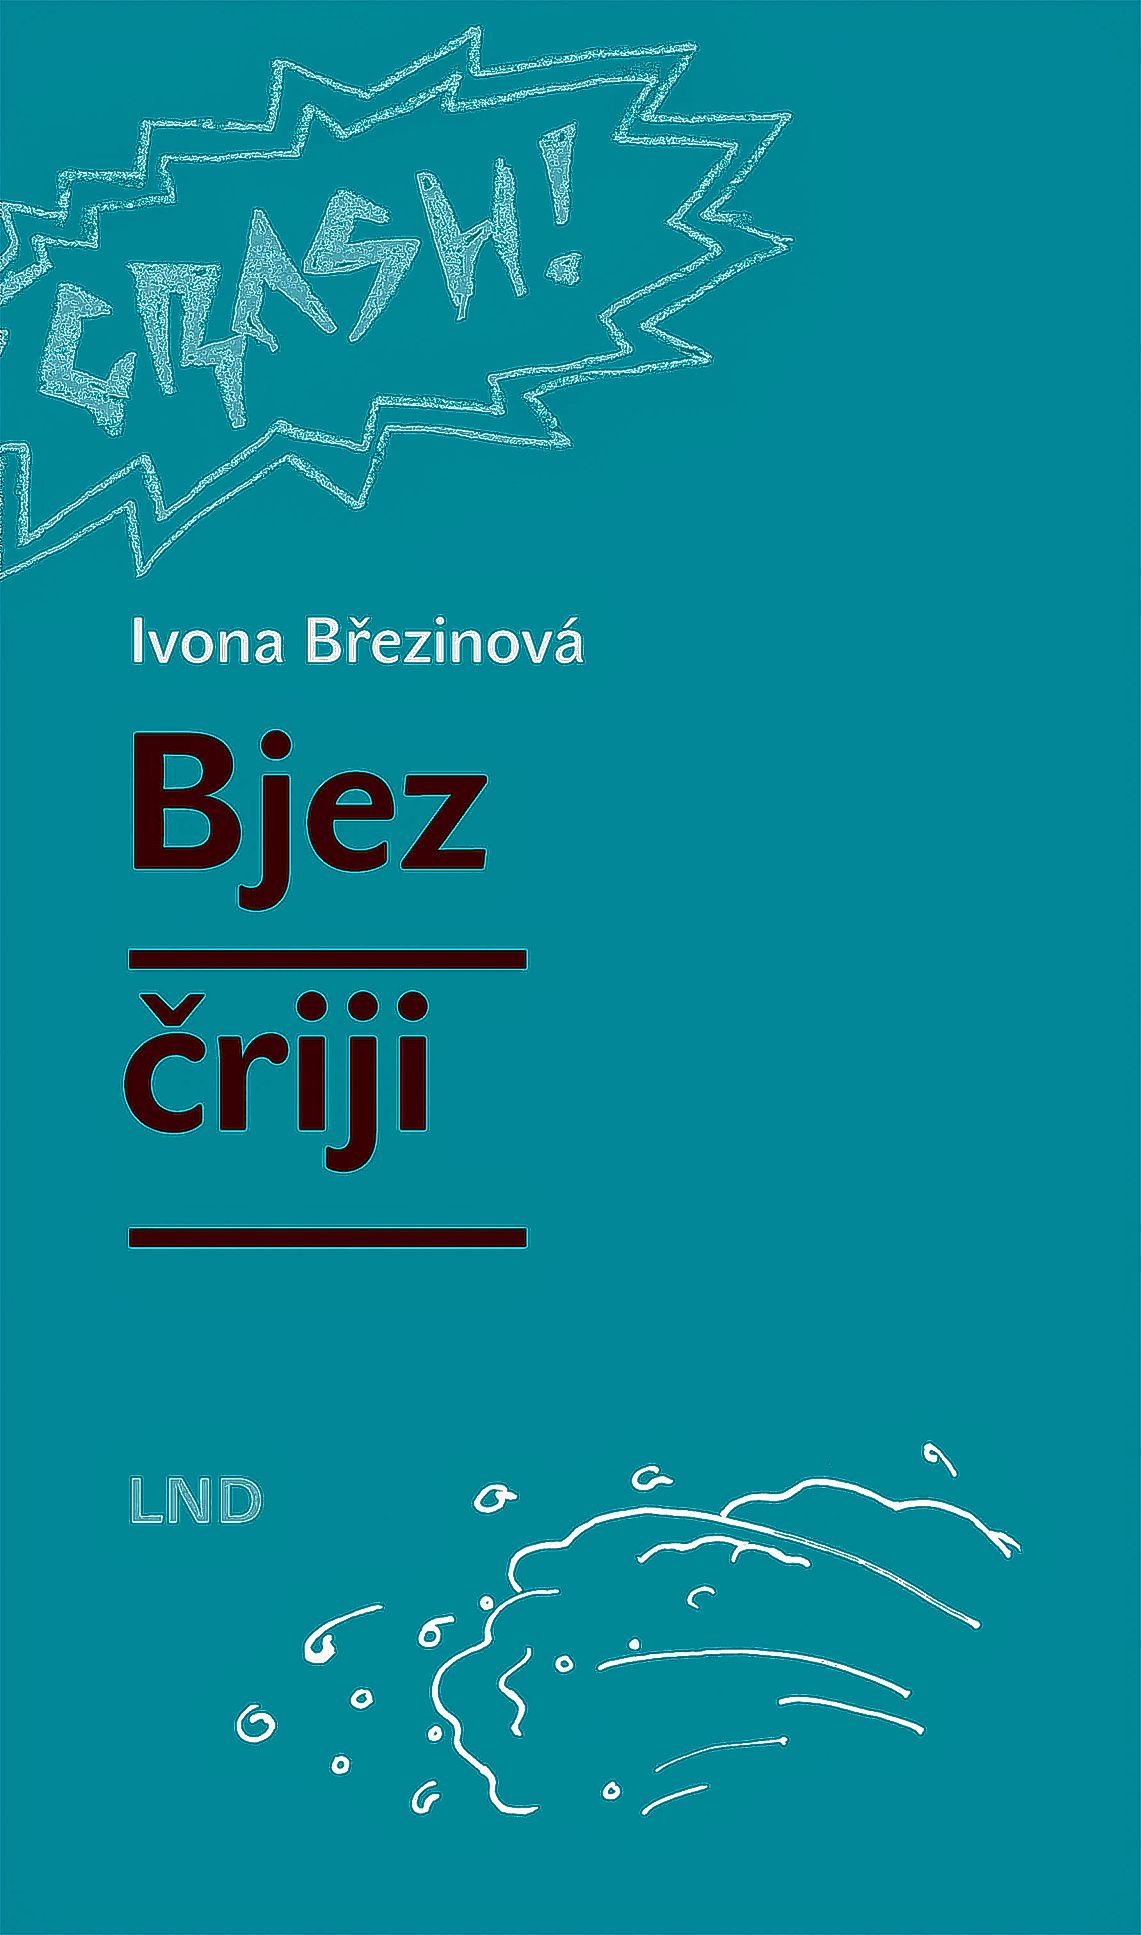 <b>Ivona Březinová,</b> <i>Bjez čriji,</i> z čěšćiny přełožiłoj Jana Štillerová a Pětr Šołta, ilustrował Jakub Troják, Budyšin 2022